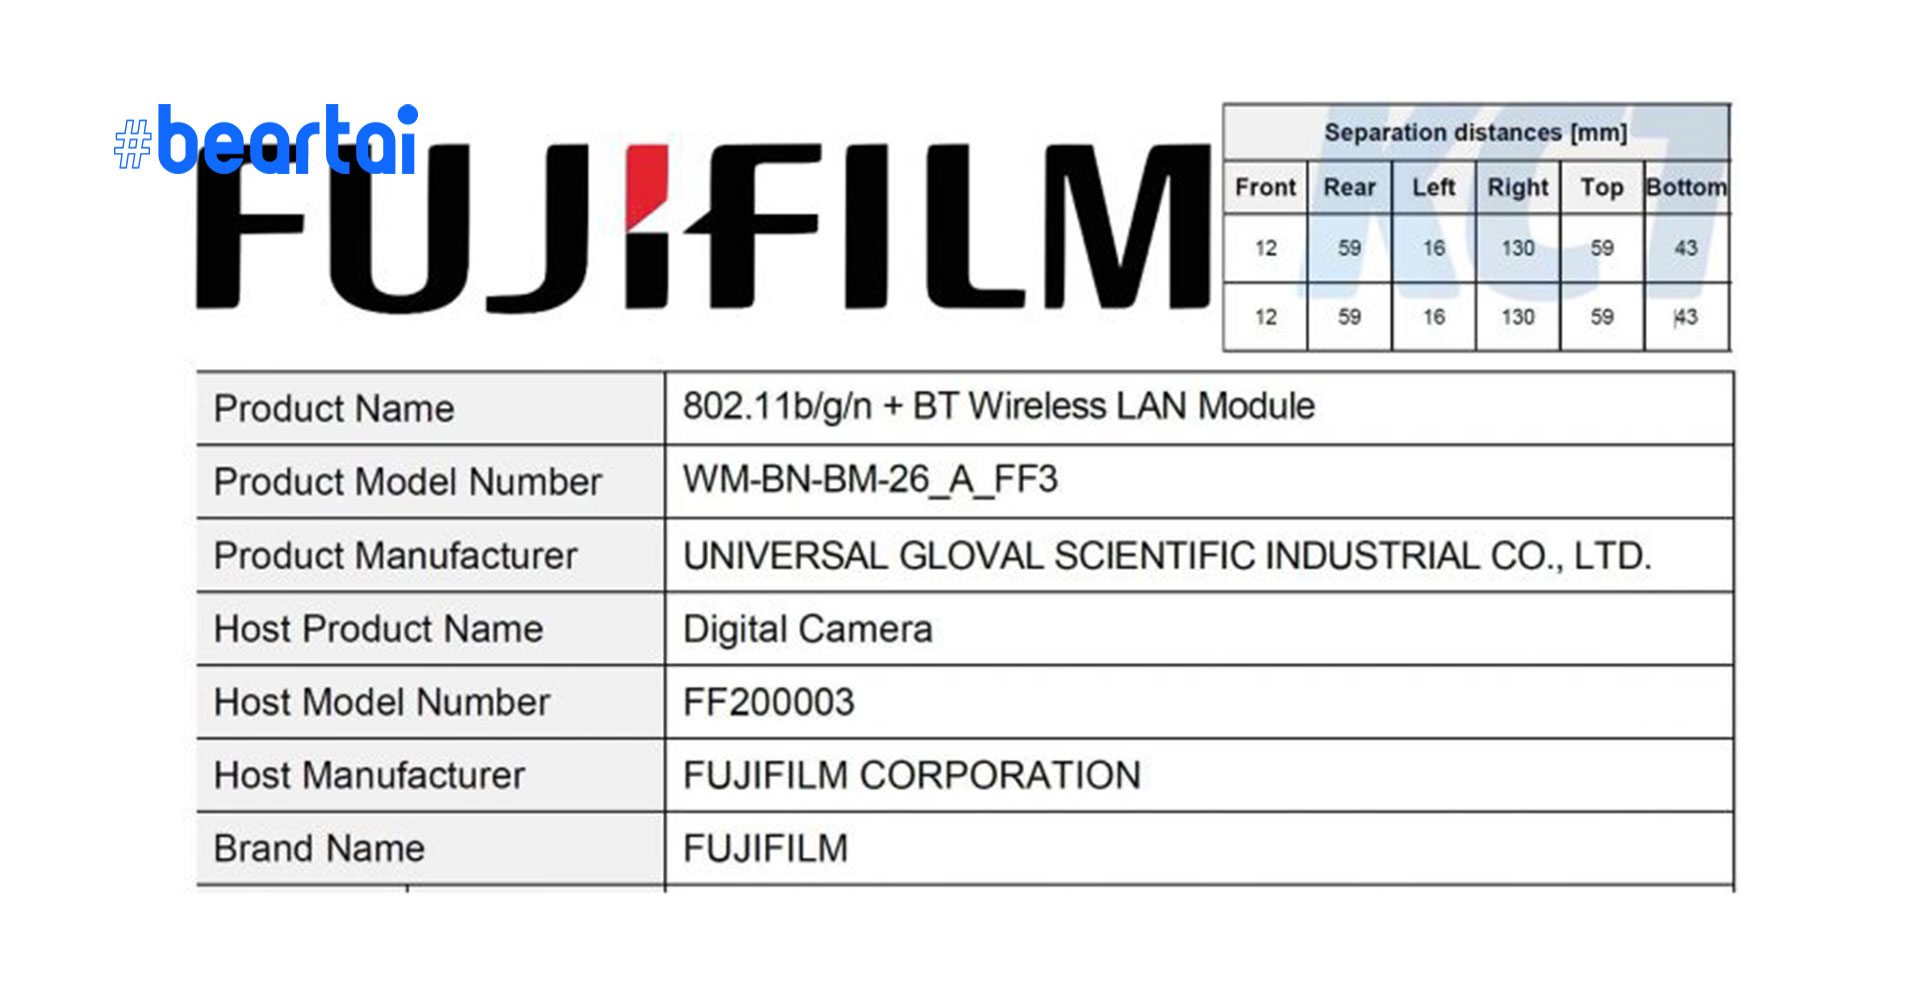 อัปเดตข่าว กล้องใหม่รหัส “FF200003” ของ Fujifilm คาดเปิดตัว 29 มกราคม 2021 ลุ้นจะเป็น X-E4 หรือ GFX100S